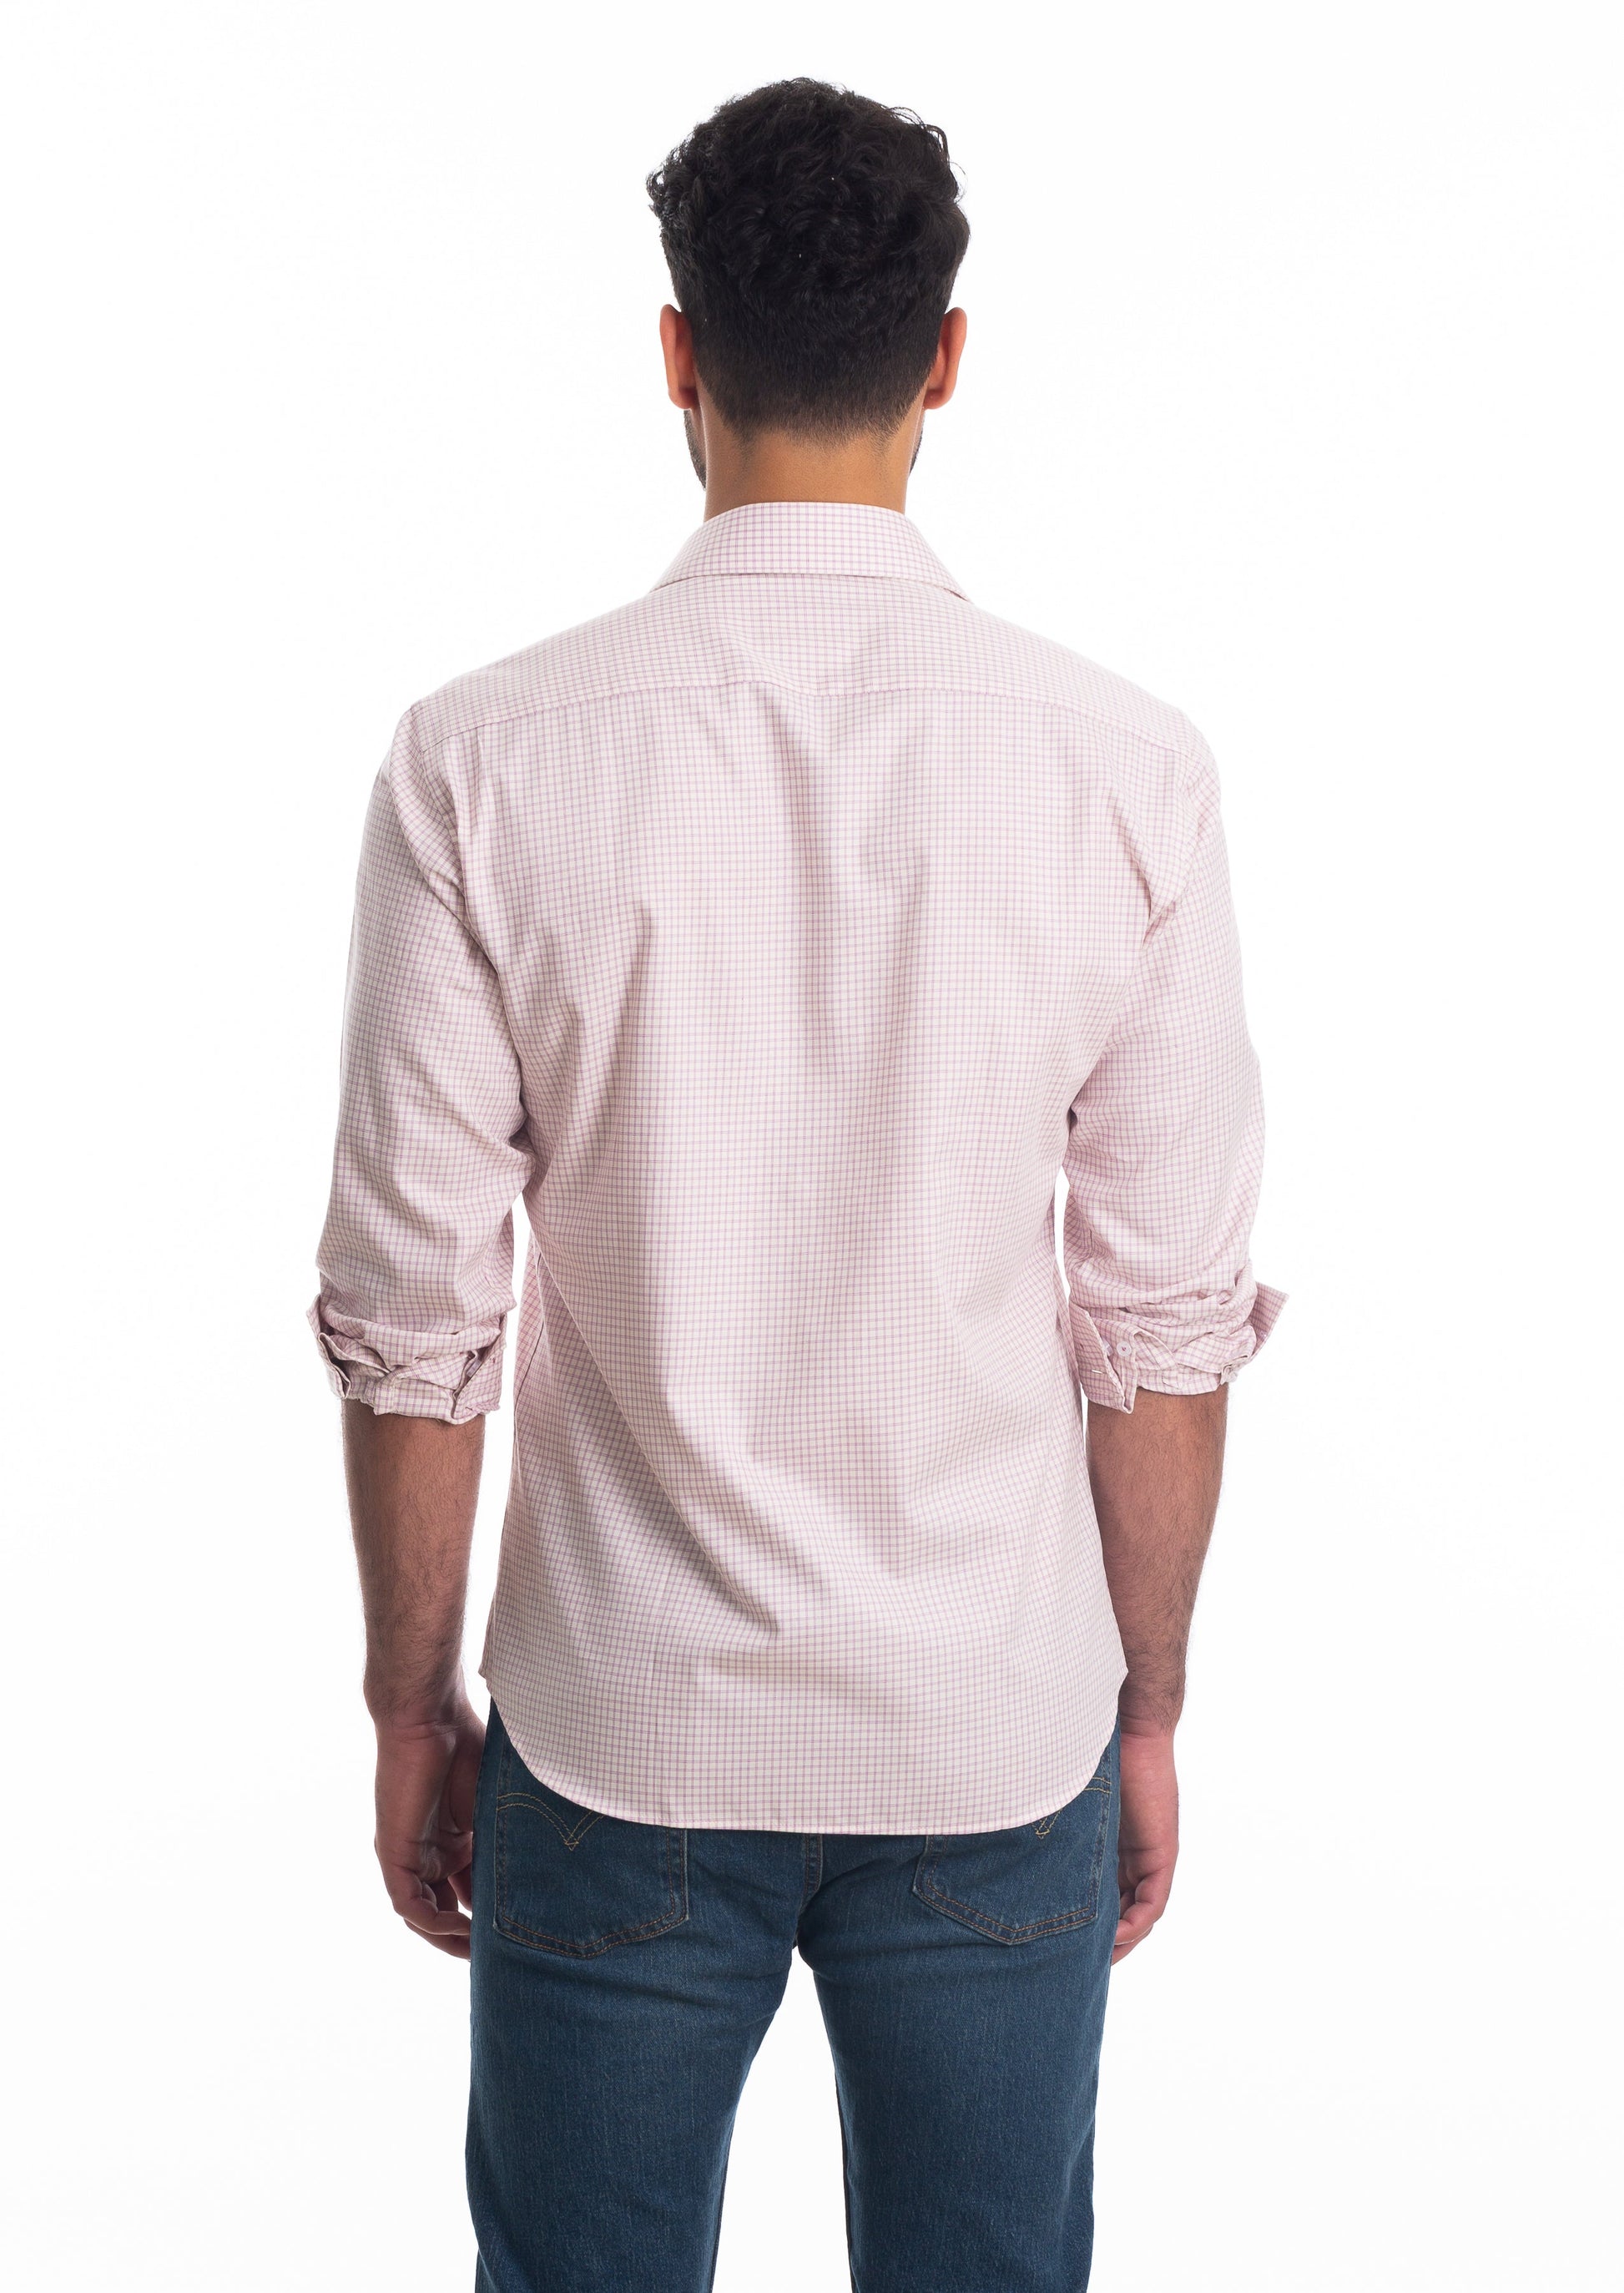 White + Light Pink Long Sleeve Shirt T-6808 Back